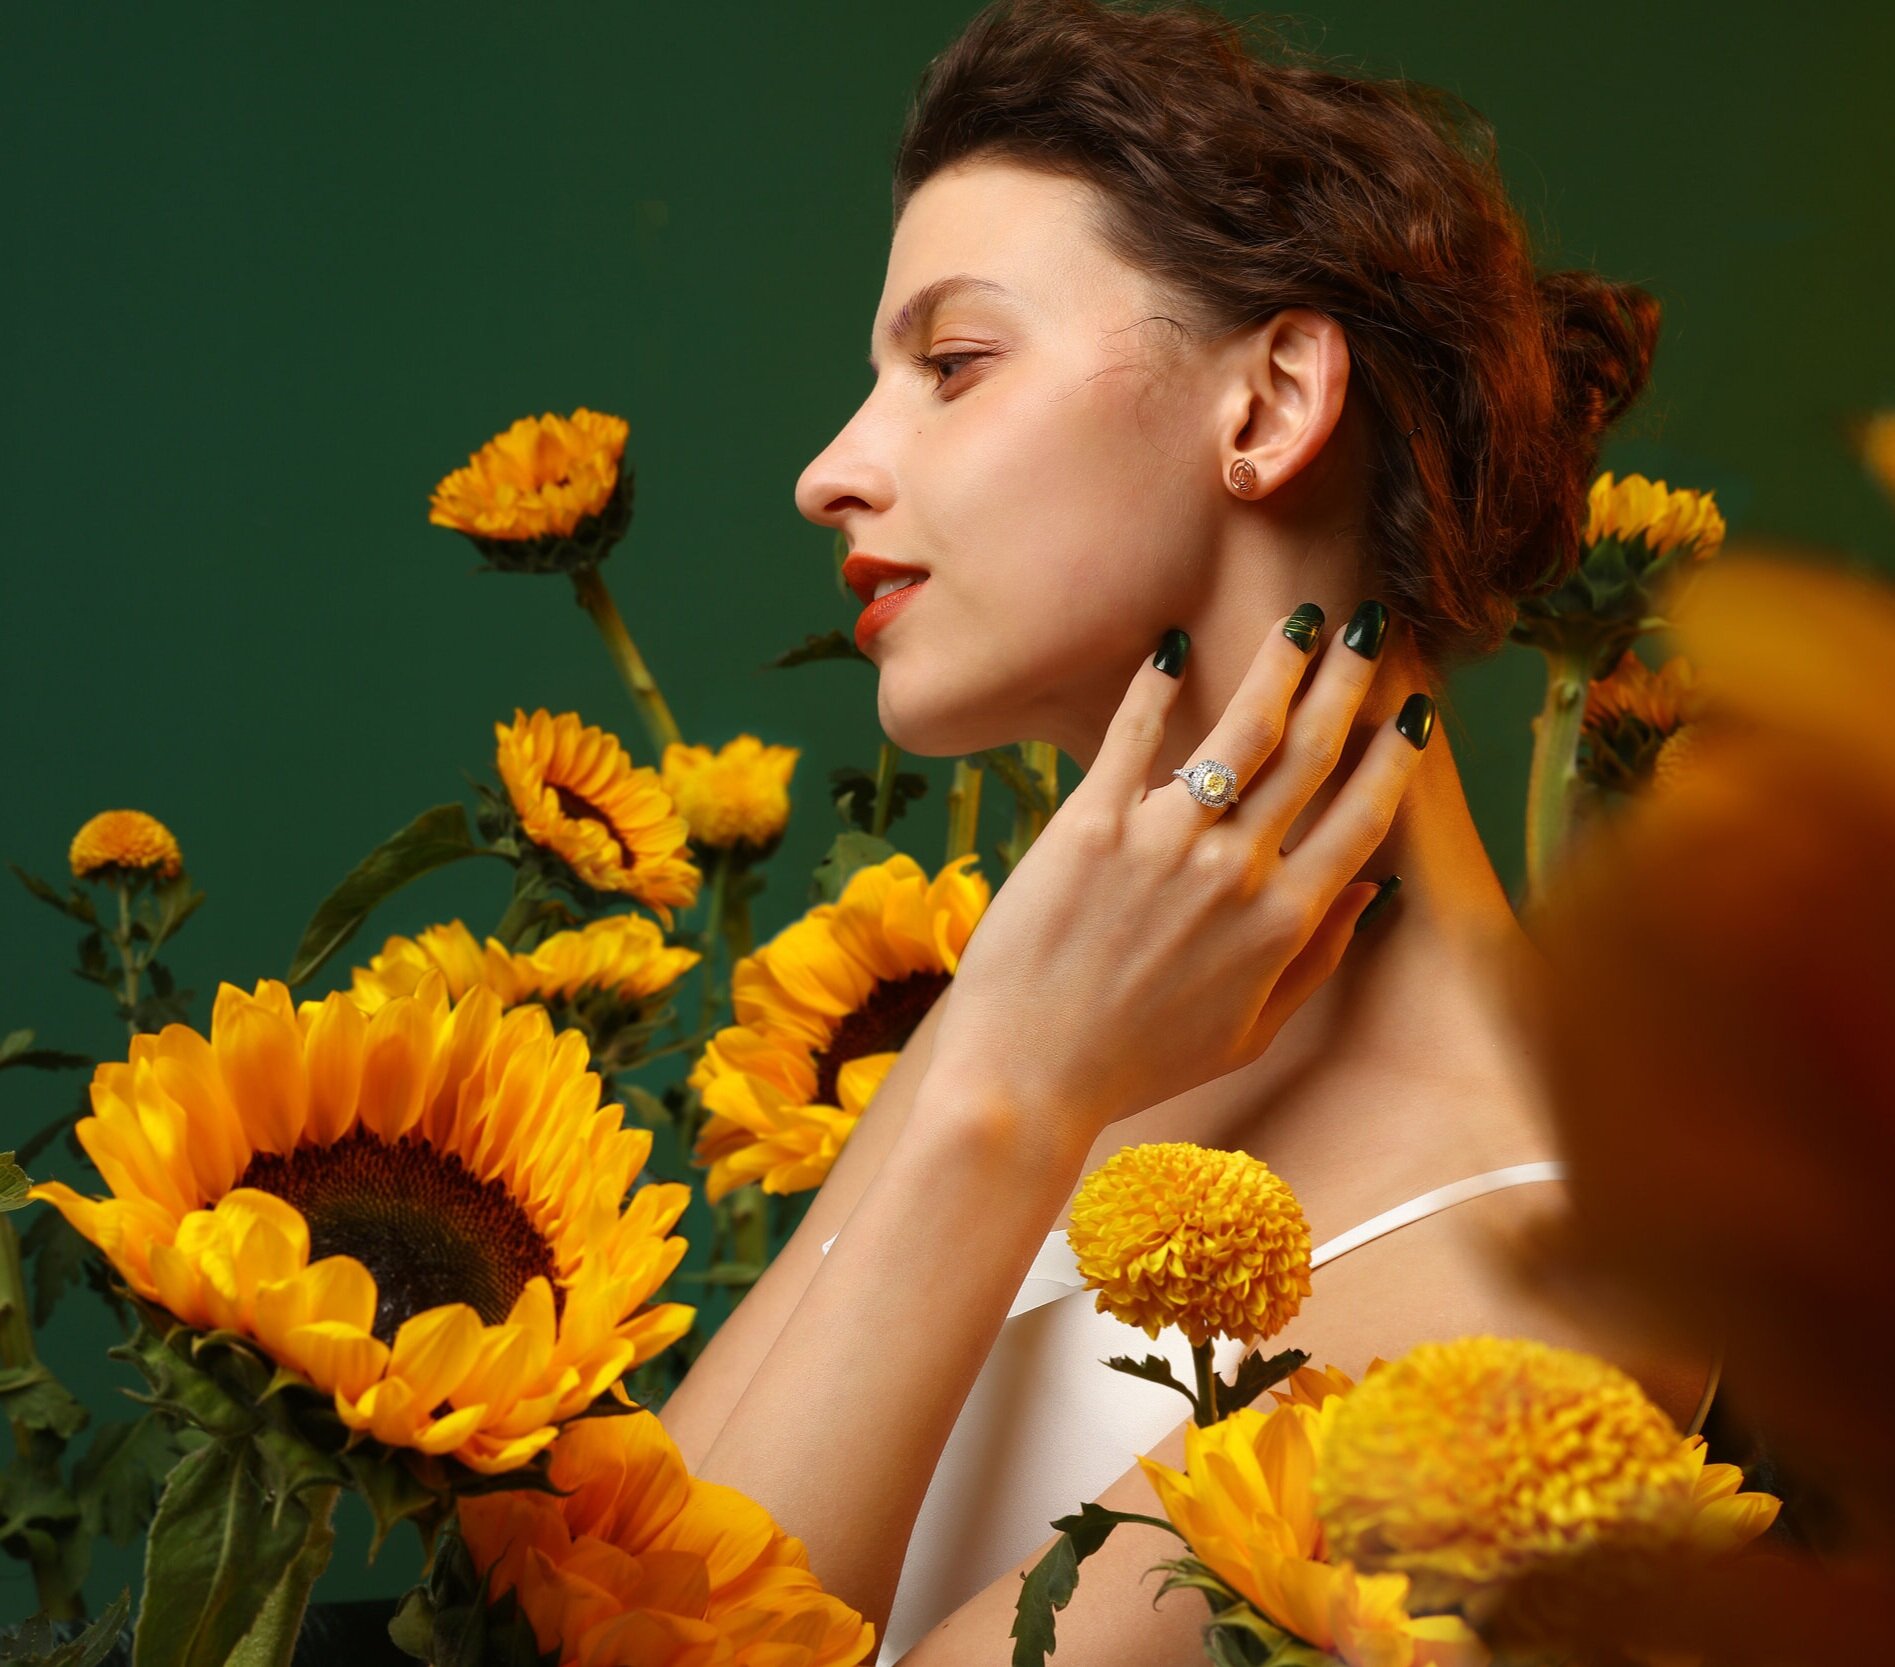 Aesthetic Girl With Sunflower - Diamond Painting - Diamond